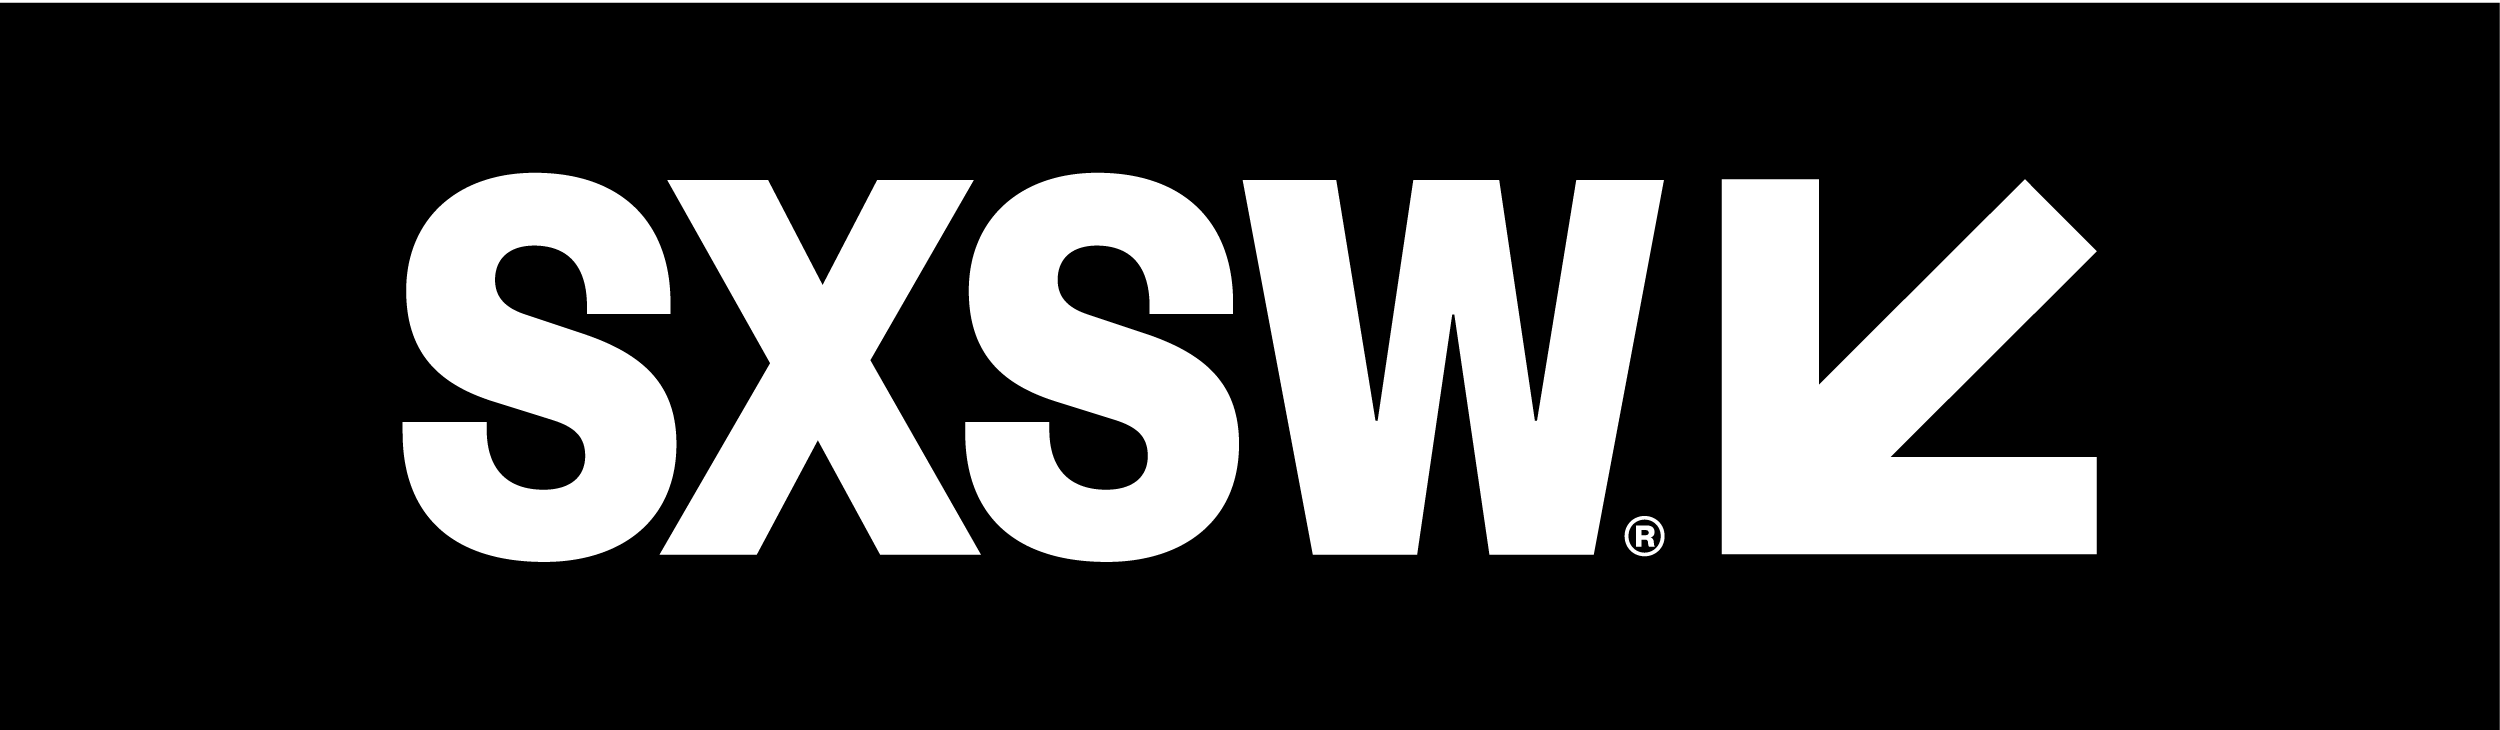 SXSW Announces Comedy Festival